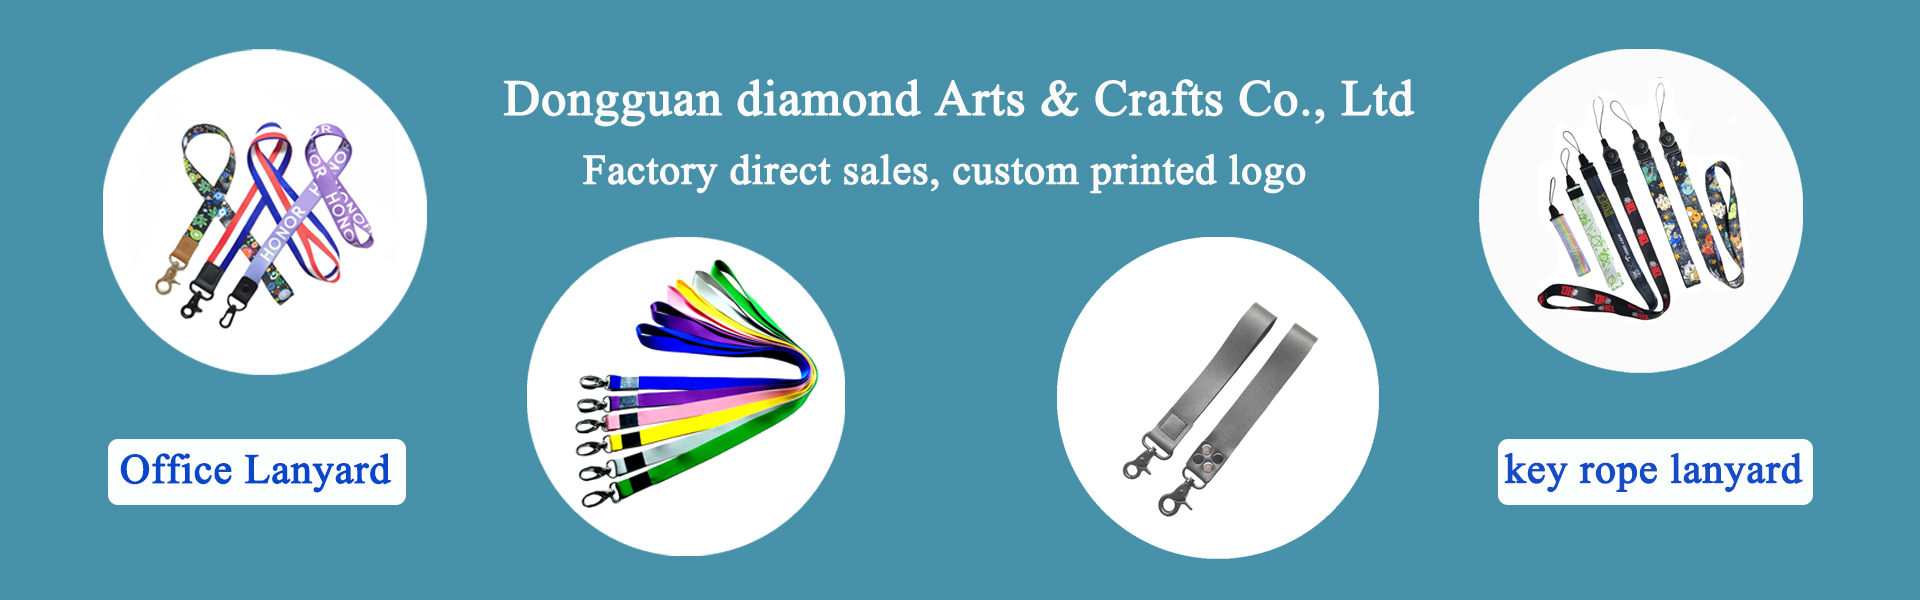 끈, 의 류 부품, 애완동물 용품,Dongguan diamond Arts & Crafts Co., Ltd